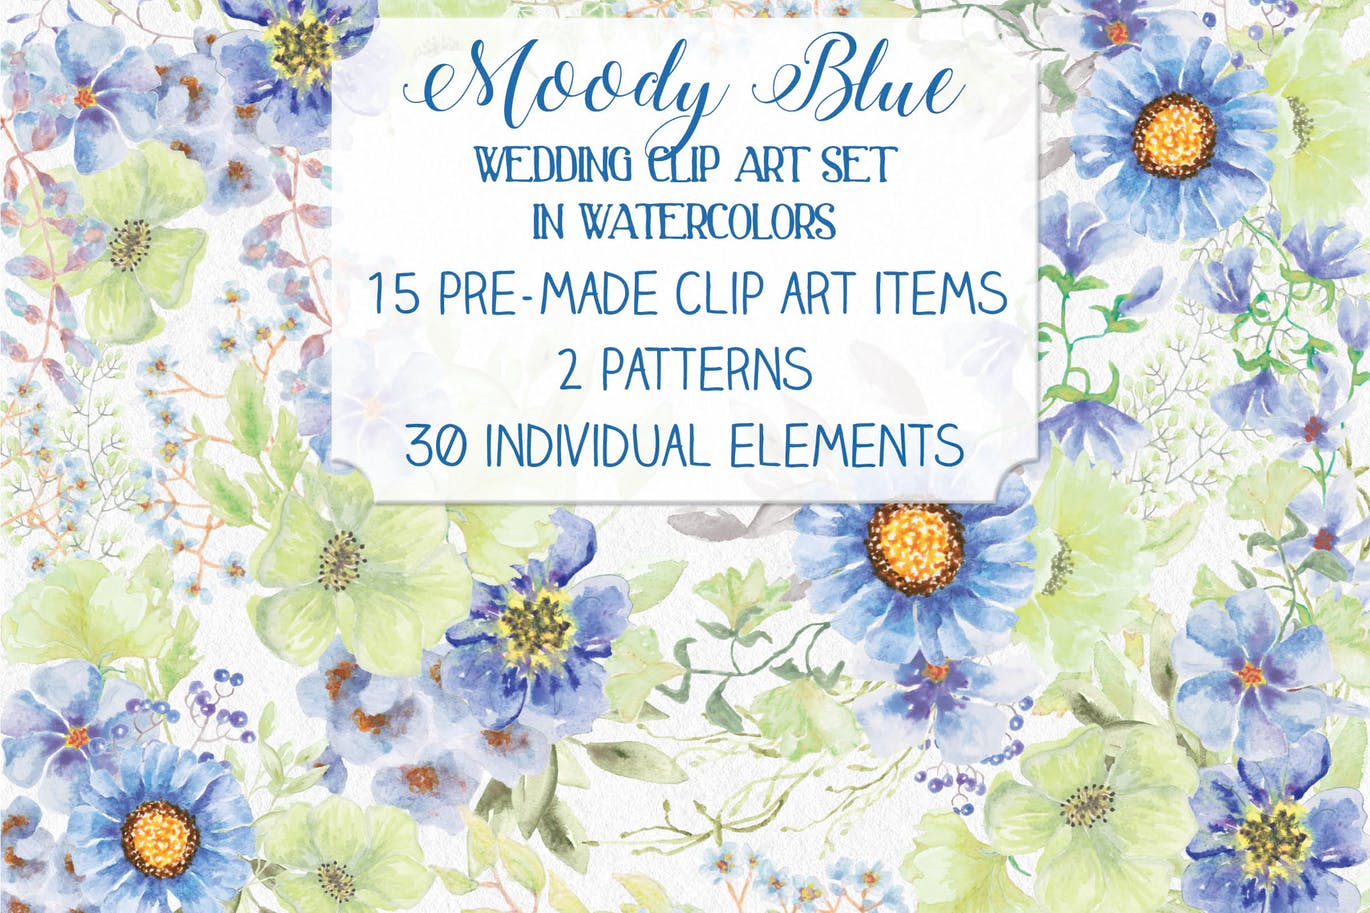 忧郁蓝水彩手绘花卉大洋岛精选设计素材 “Moody Blue” Watercolor Bundle插图